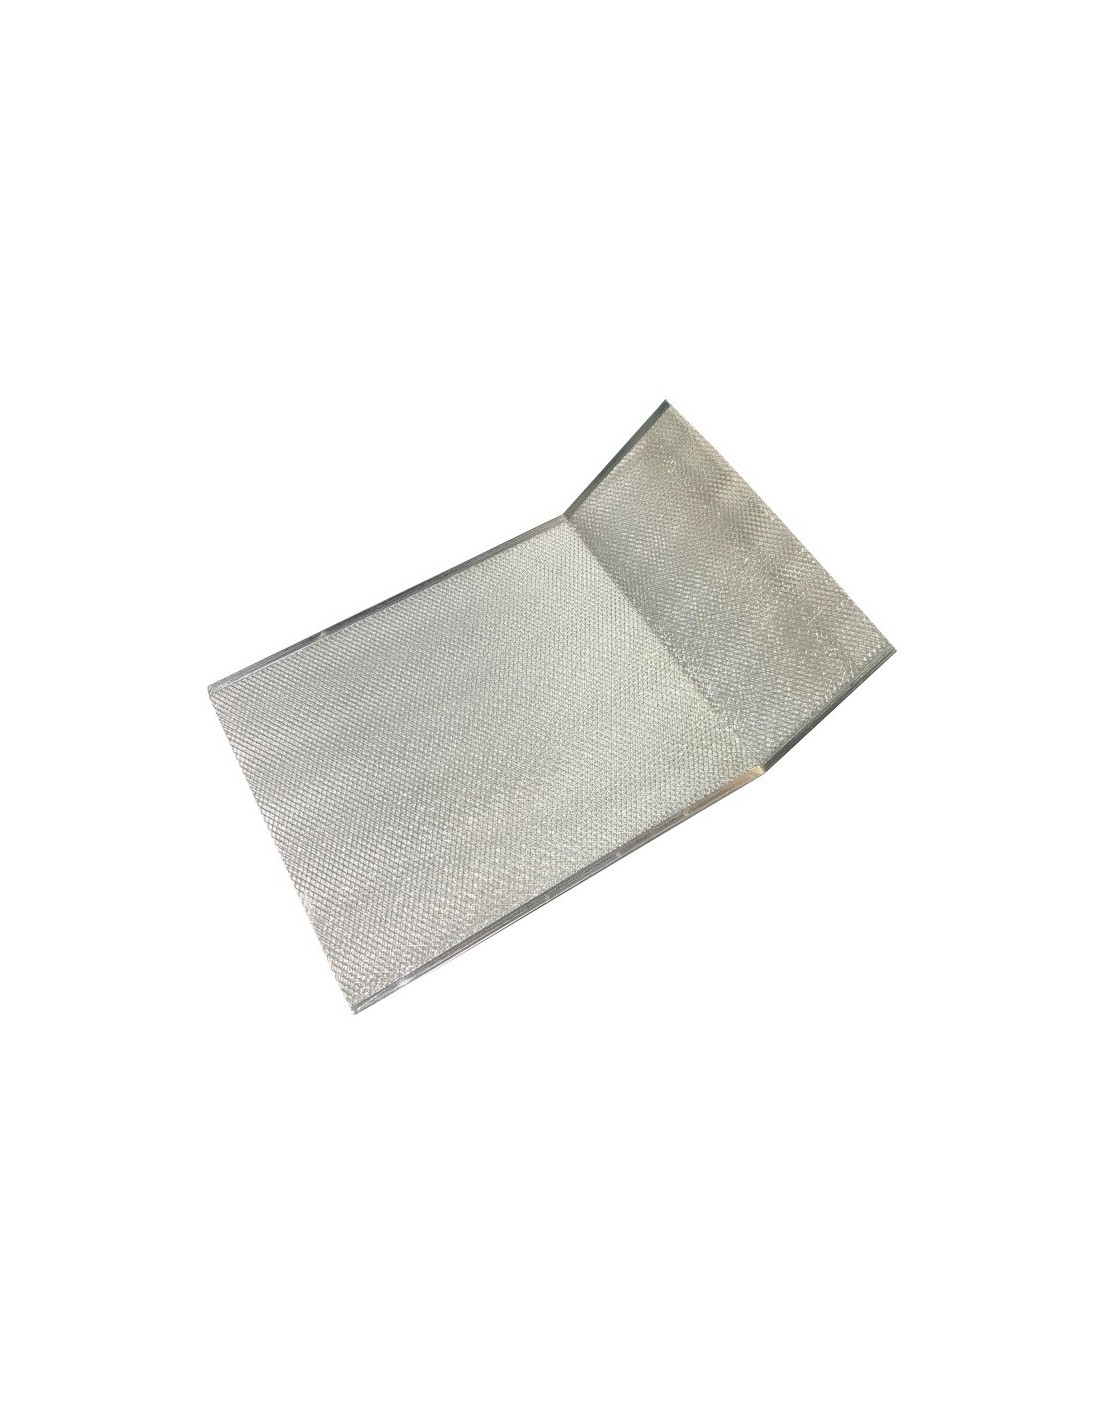 Filtro aluminio para campanas Teka Clásicas - 61801285